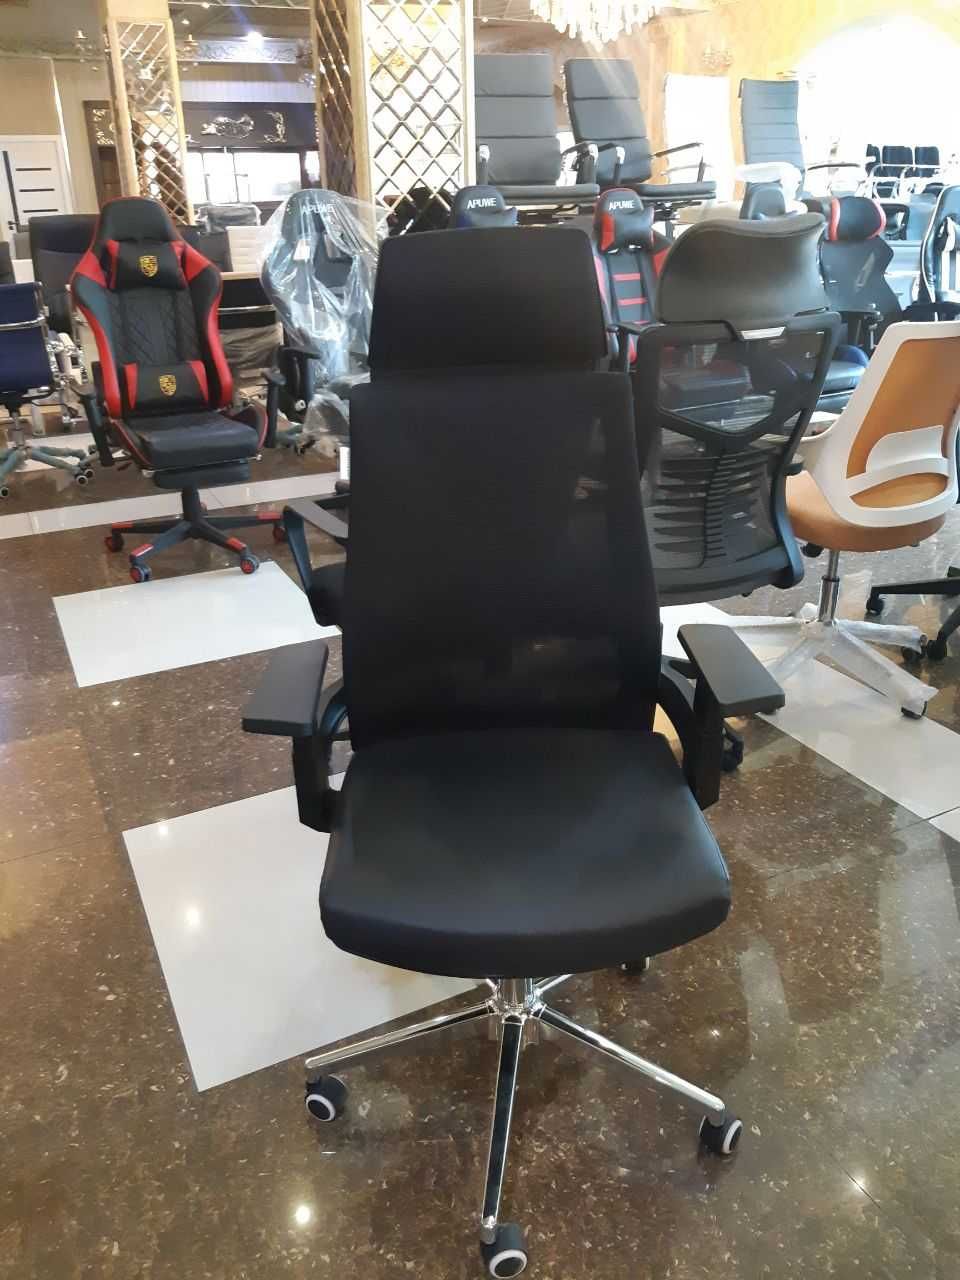 Сеточные современные   кресла NoeMax   оптовые цены г Ташкенте.